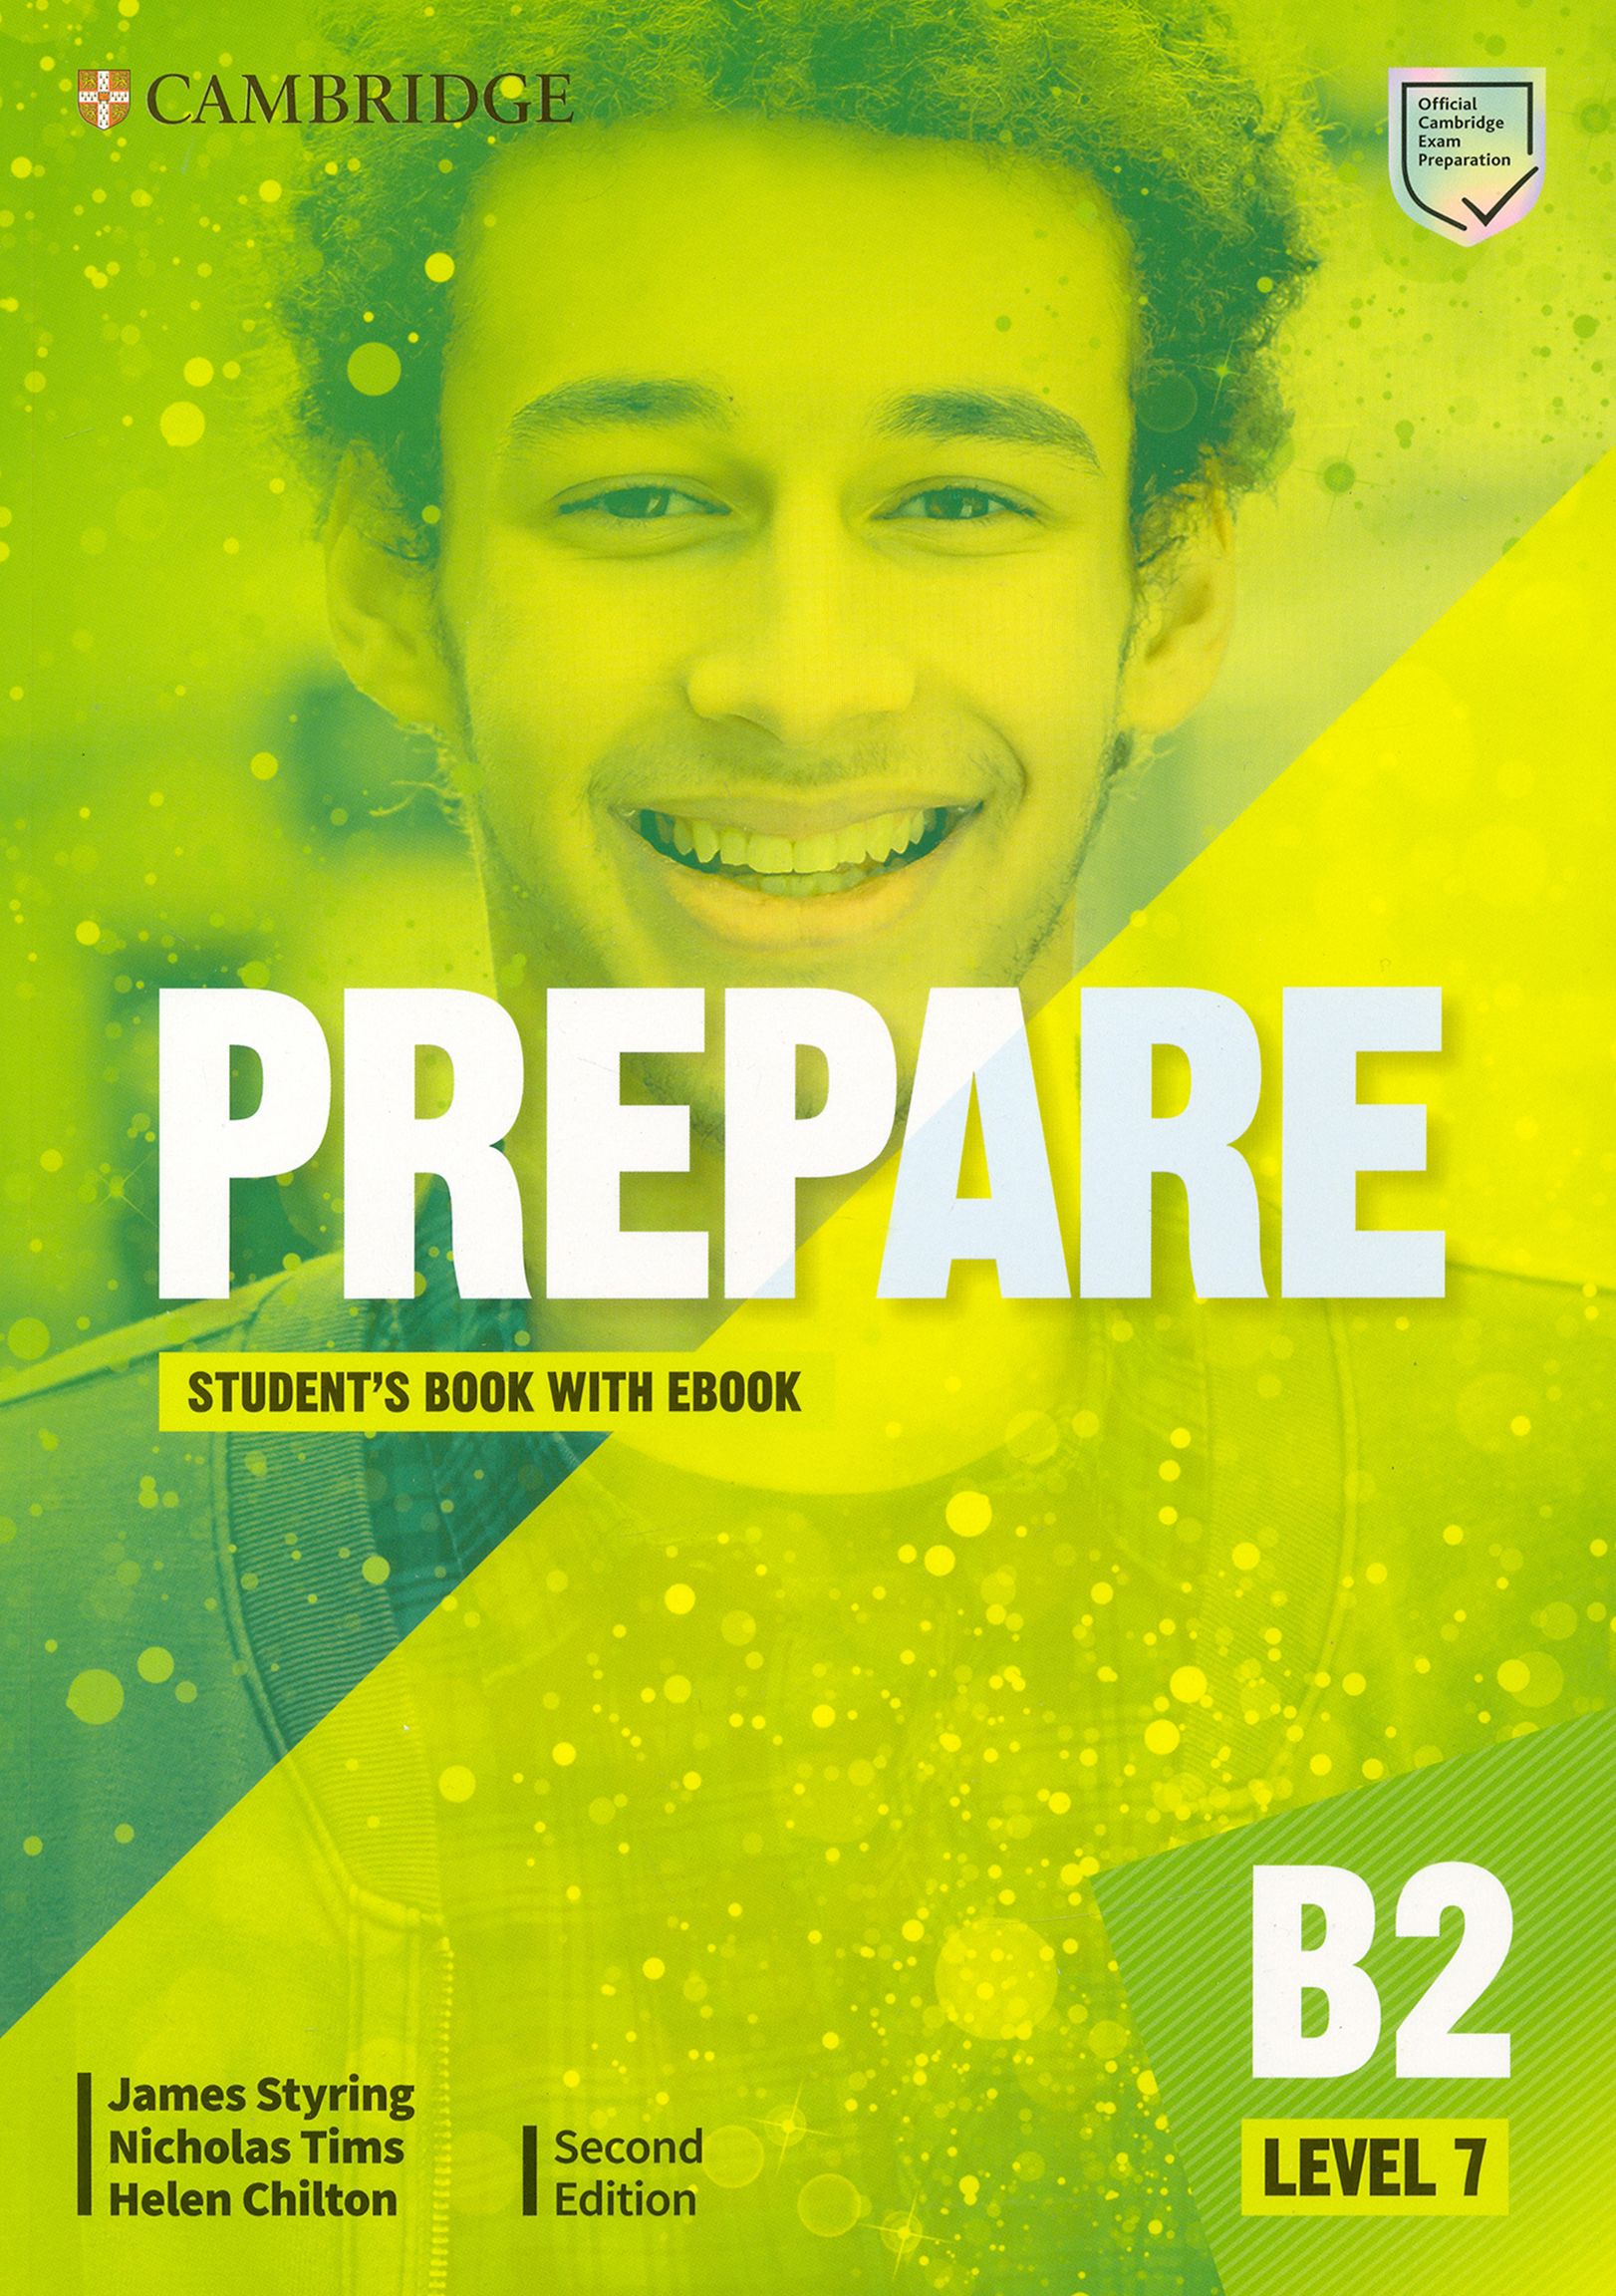 Prepare second Edition Level 7. Cambridge prepare 2nd Edition b1. Cambridge prepare 2ed Level 2 Plus. Prepare 2nd Edition Level 4. Prepare 2nd